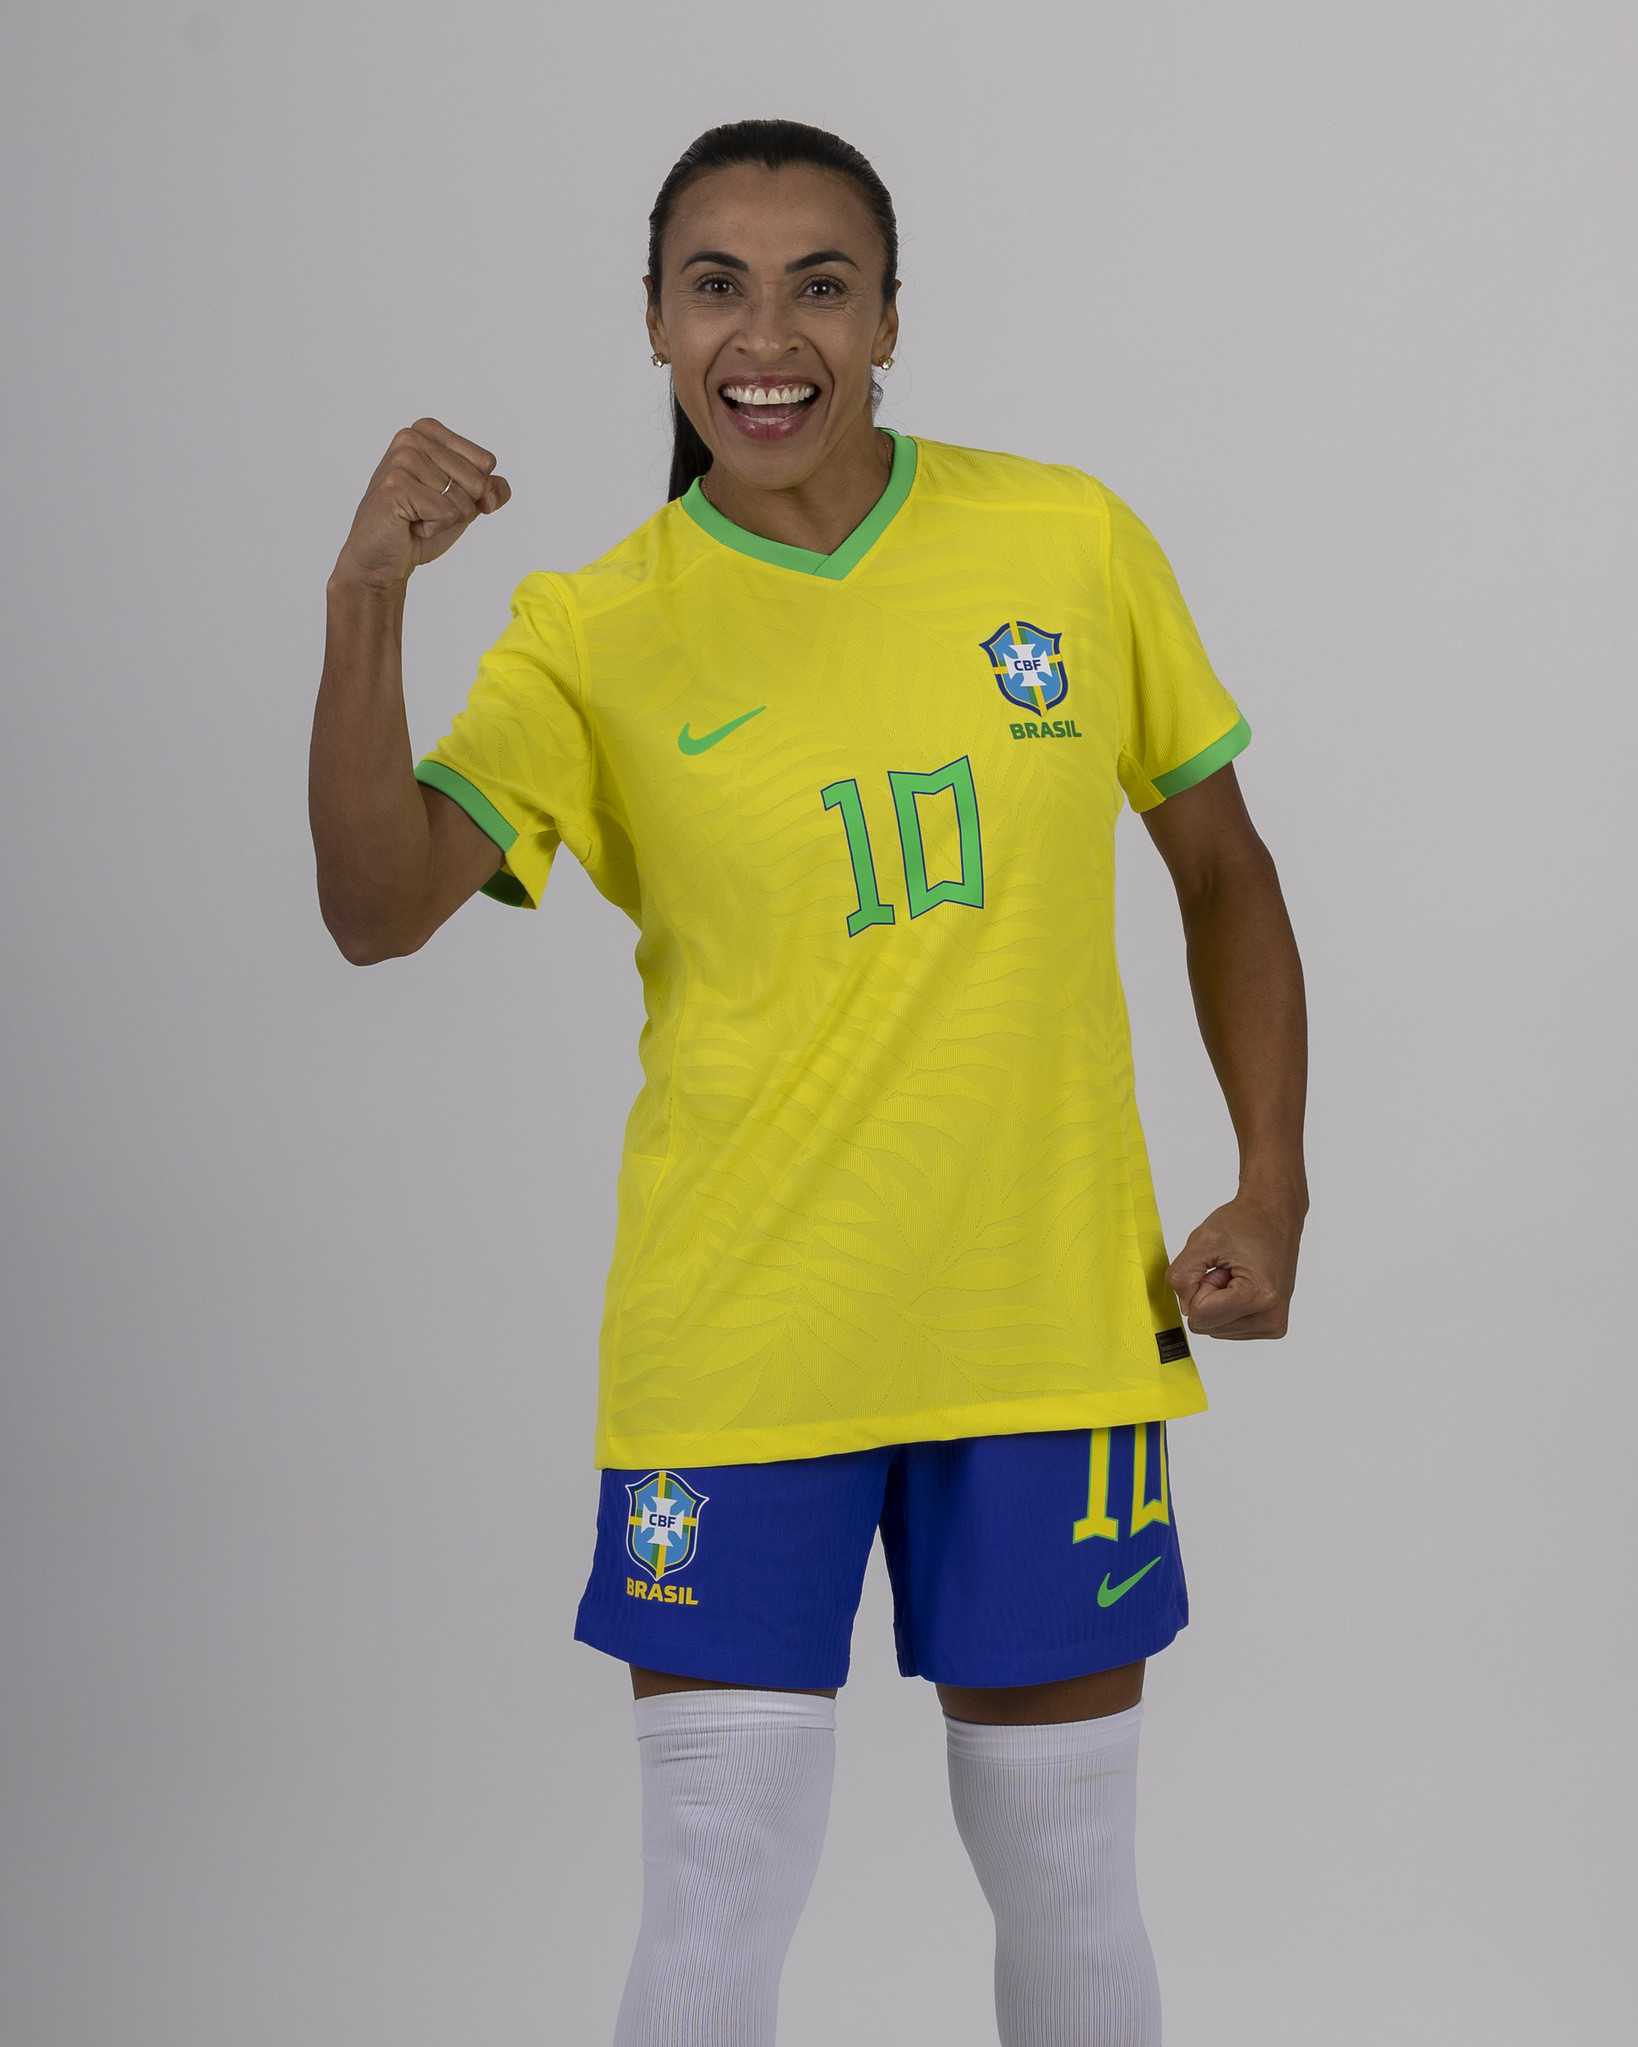 Seleção brasileira, as favoritas, folga no trampo… Tudo que você